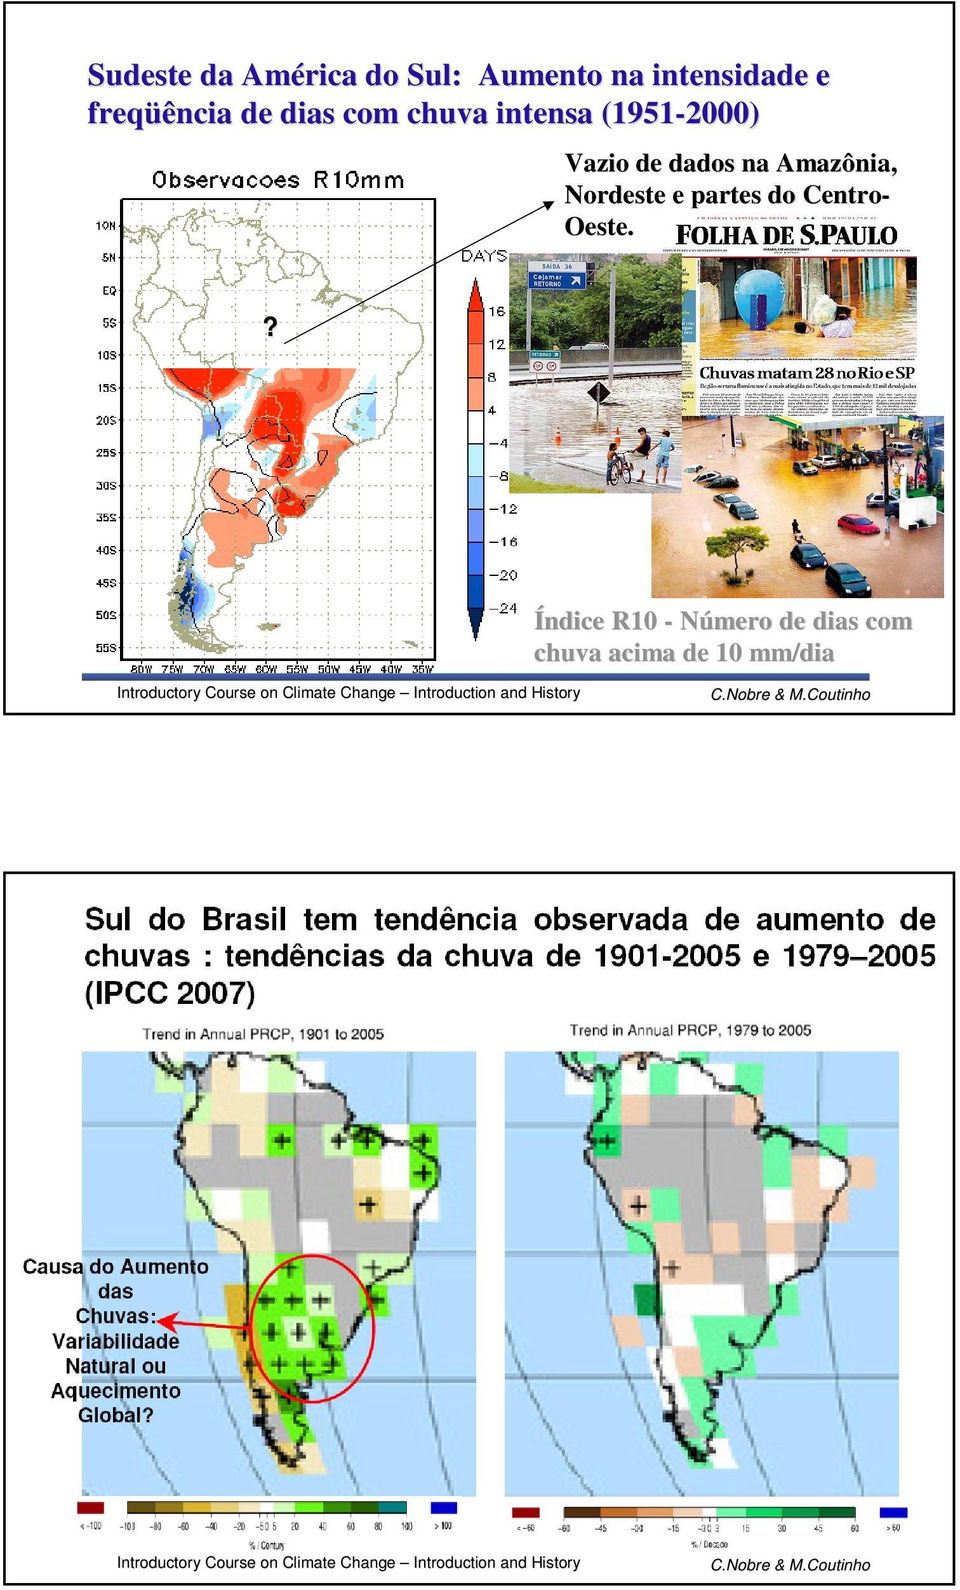 Vazio de dados na Amazônia, Nordeste e partes do Centro-